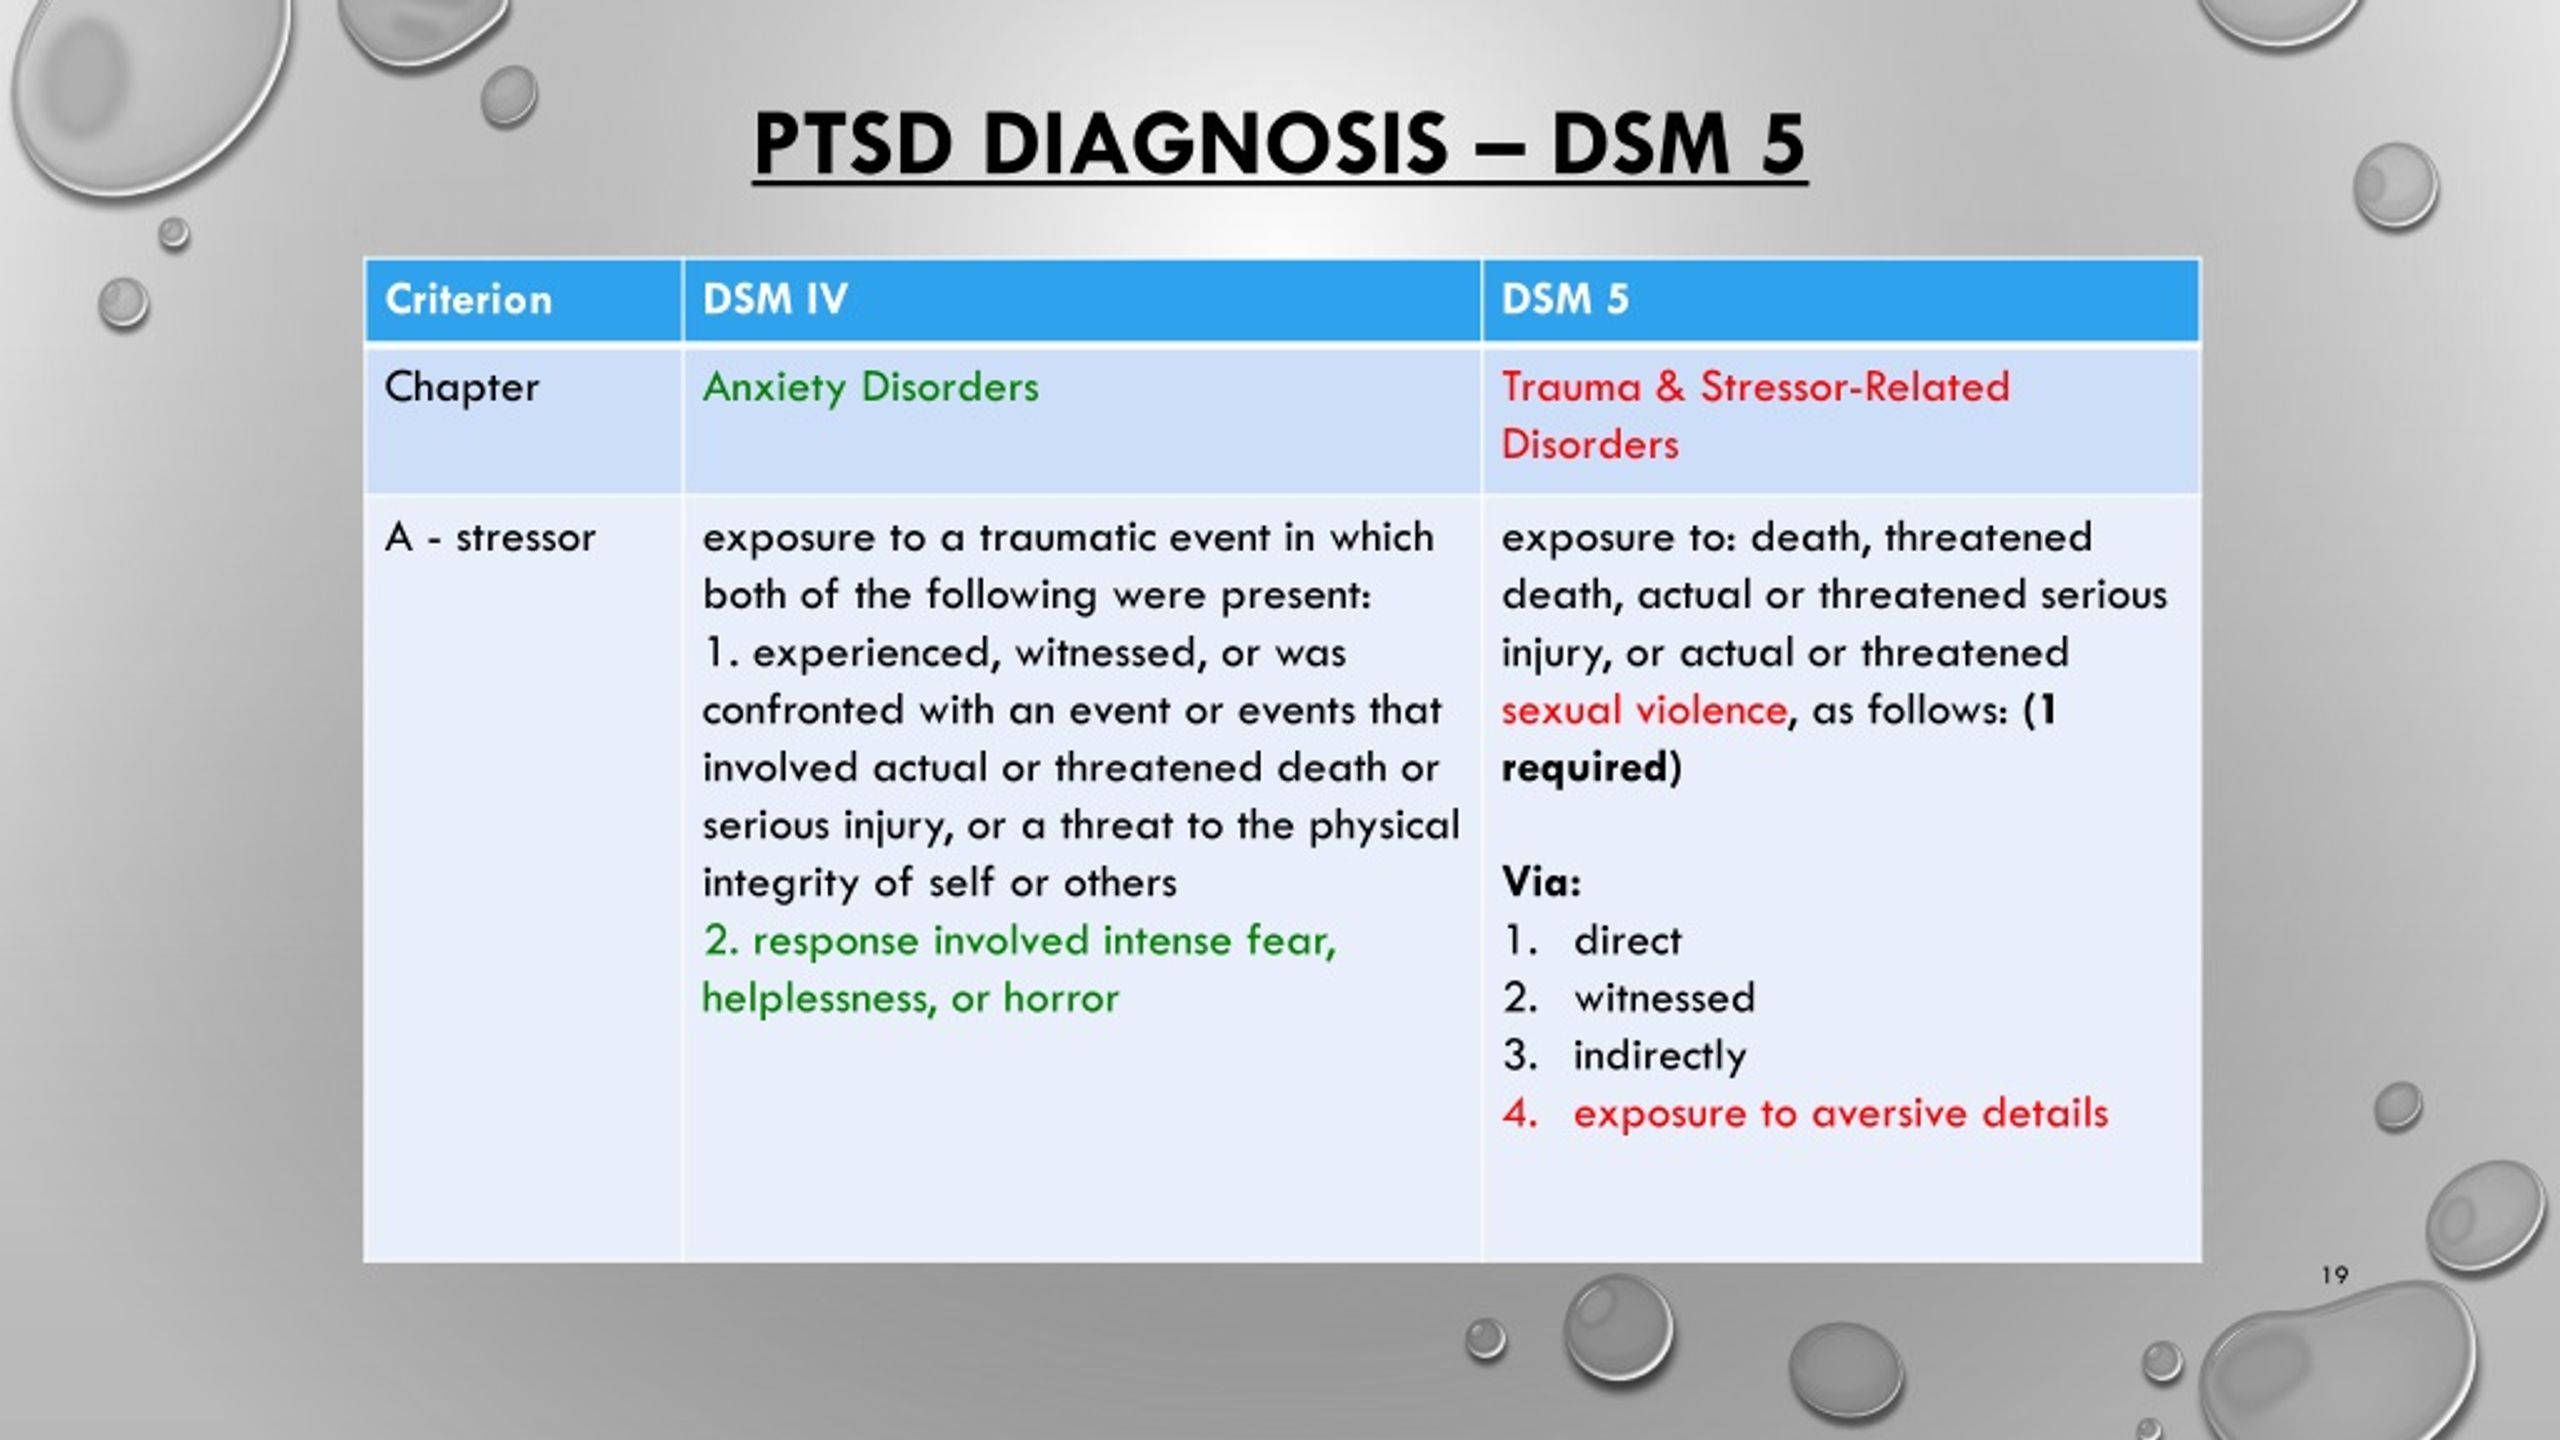 dsm 5 ptsd criteria differential